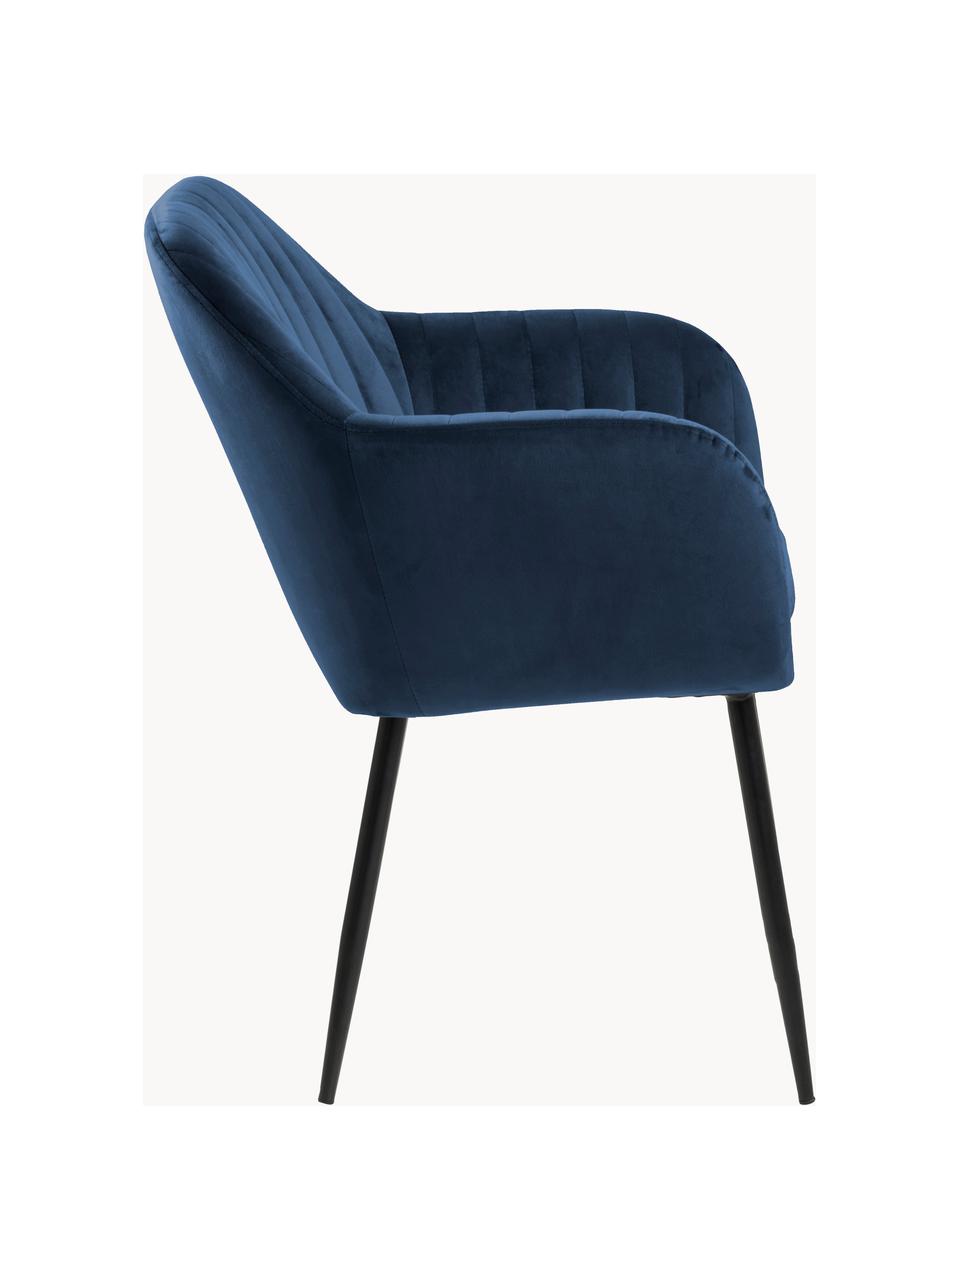 Chaise rembourrée en velours Emilia, Velours bleu foncé, pieds noirs, larg. 57 x prof. 59 cm